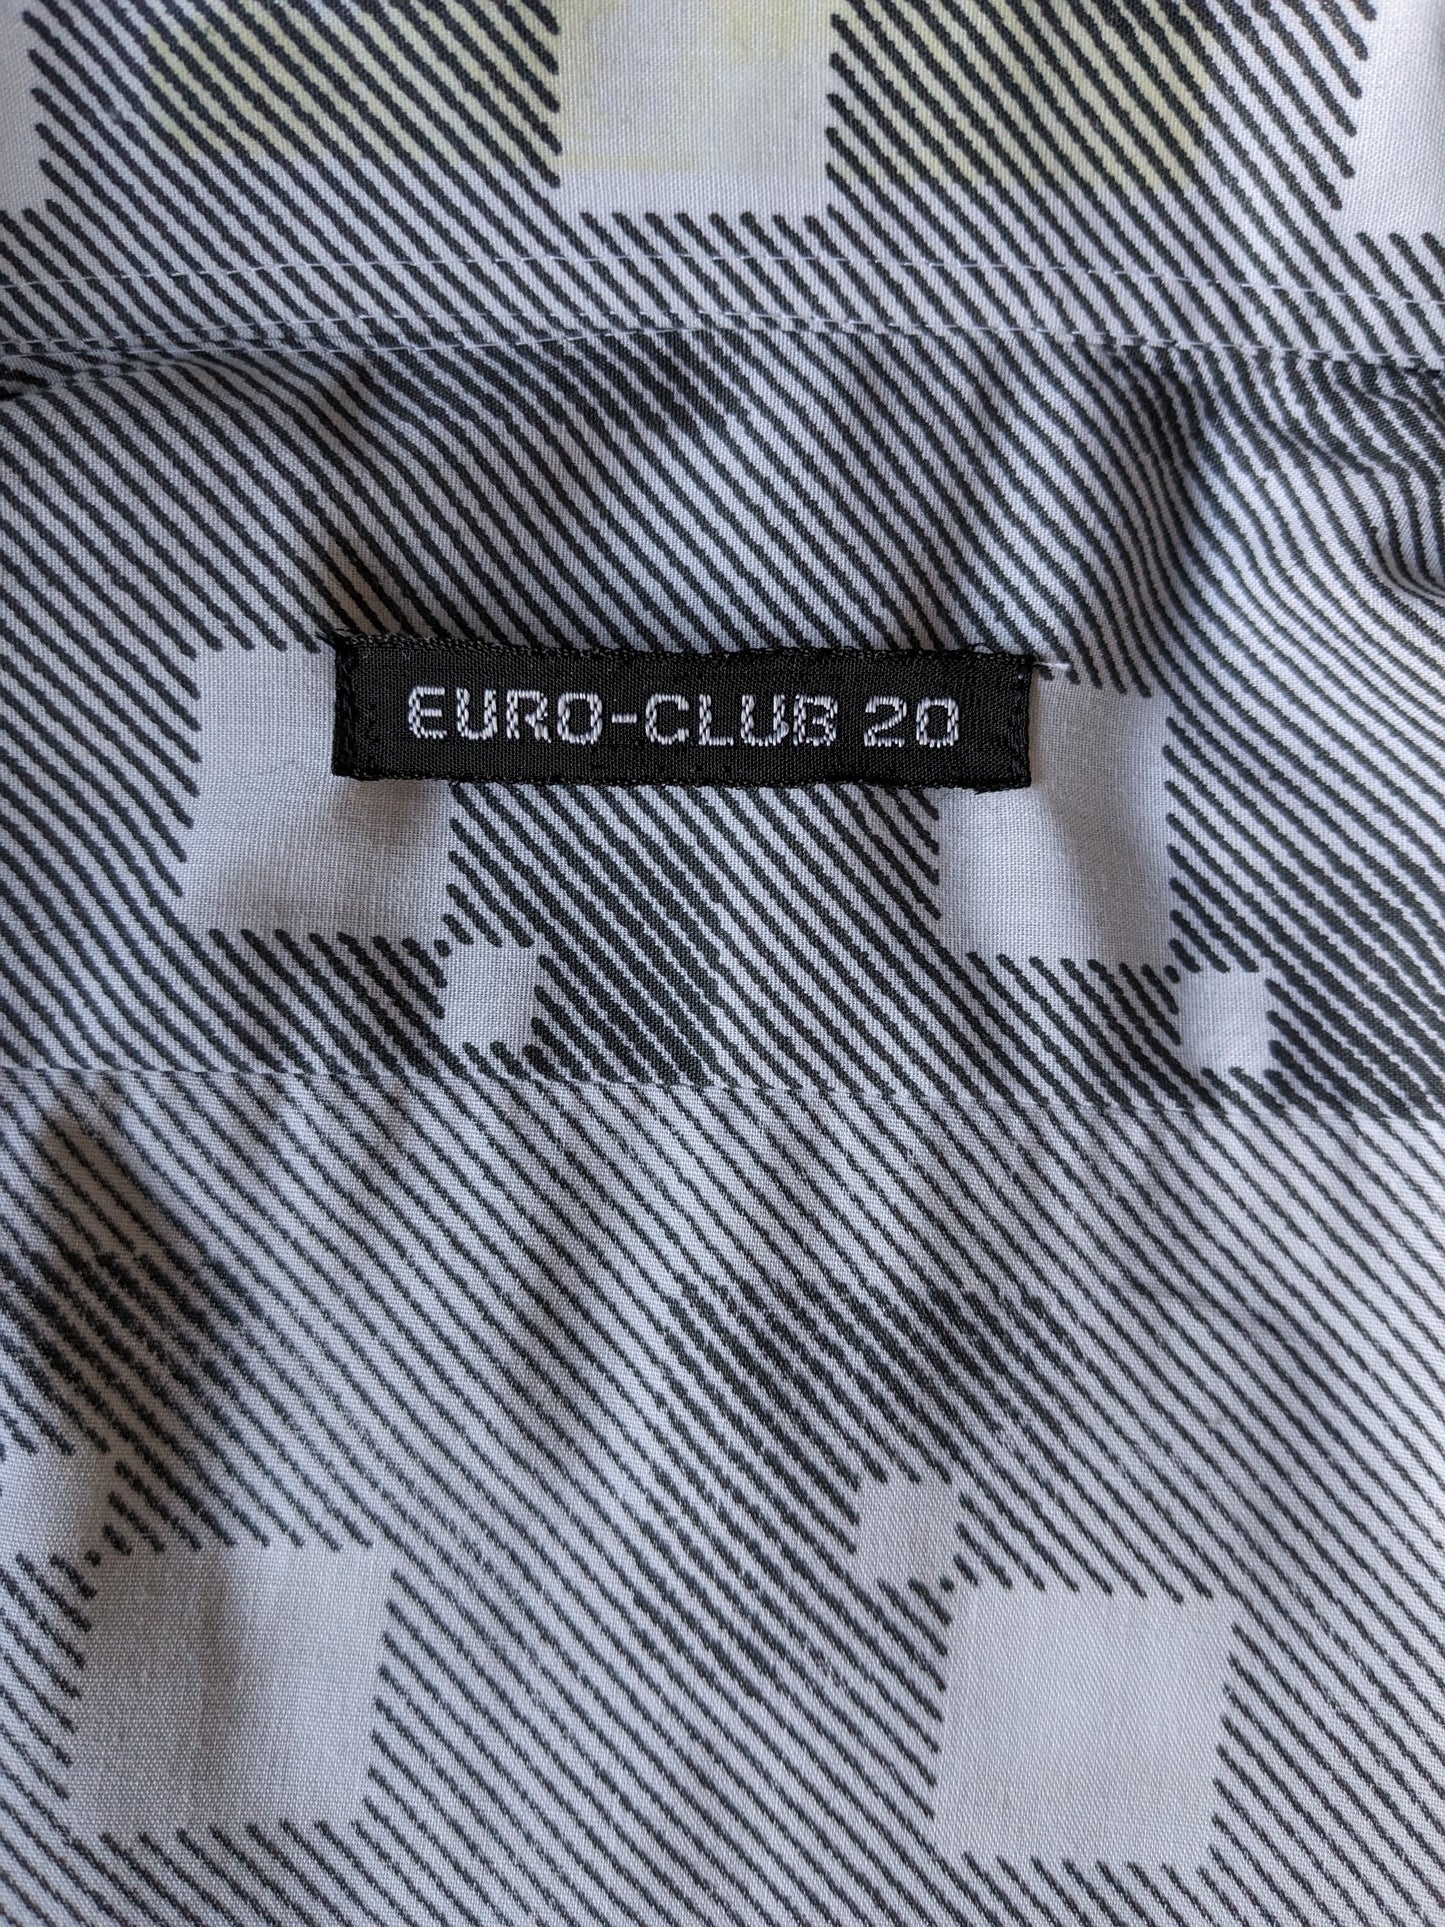 Shirt de l'Euro-Club-20 des années 70 vintage avec collier. Impression grise blanche. Taille M.